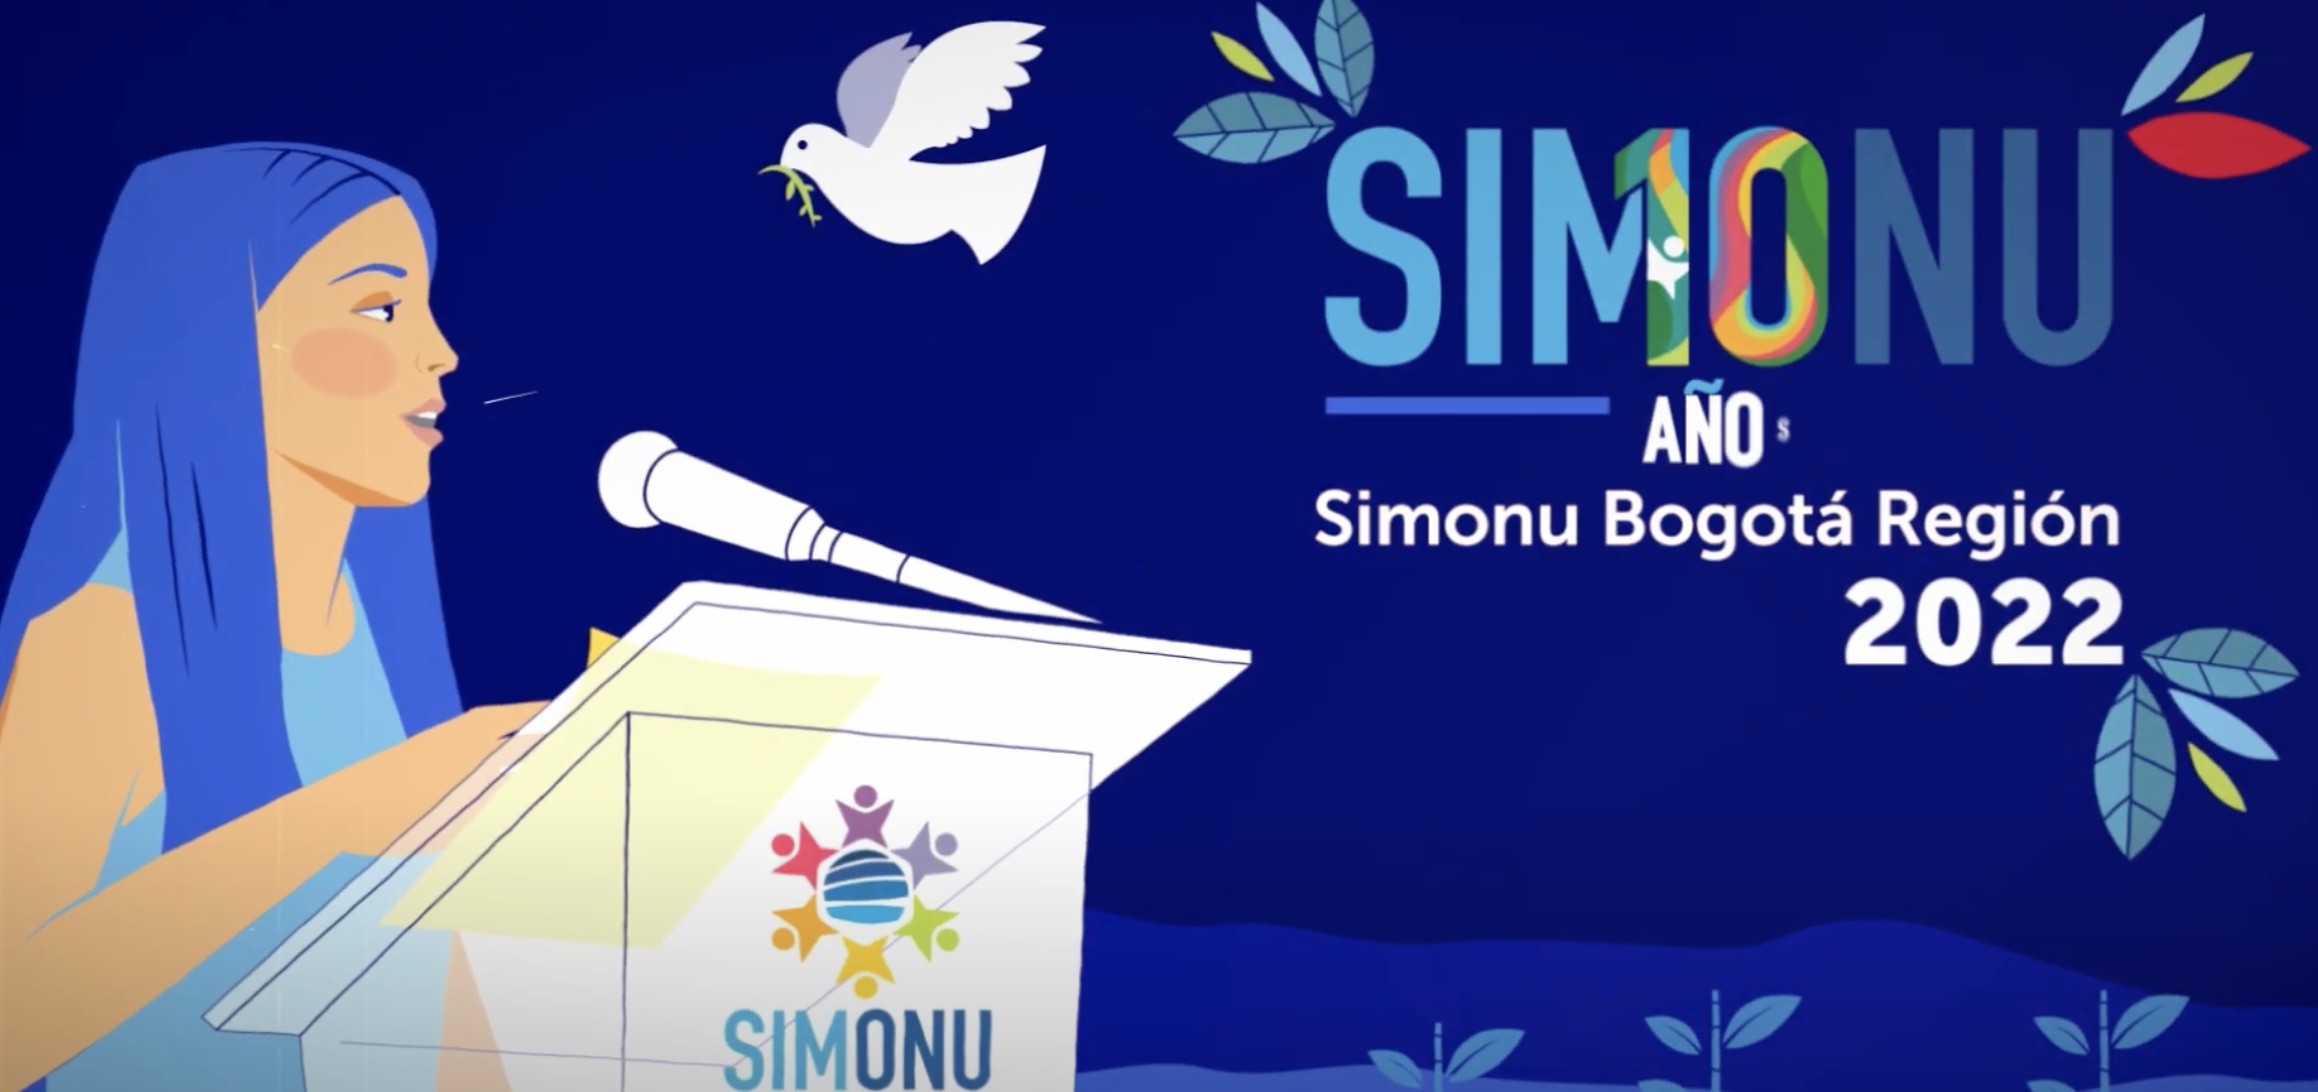 10 años de una historia llamada Simonu